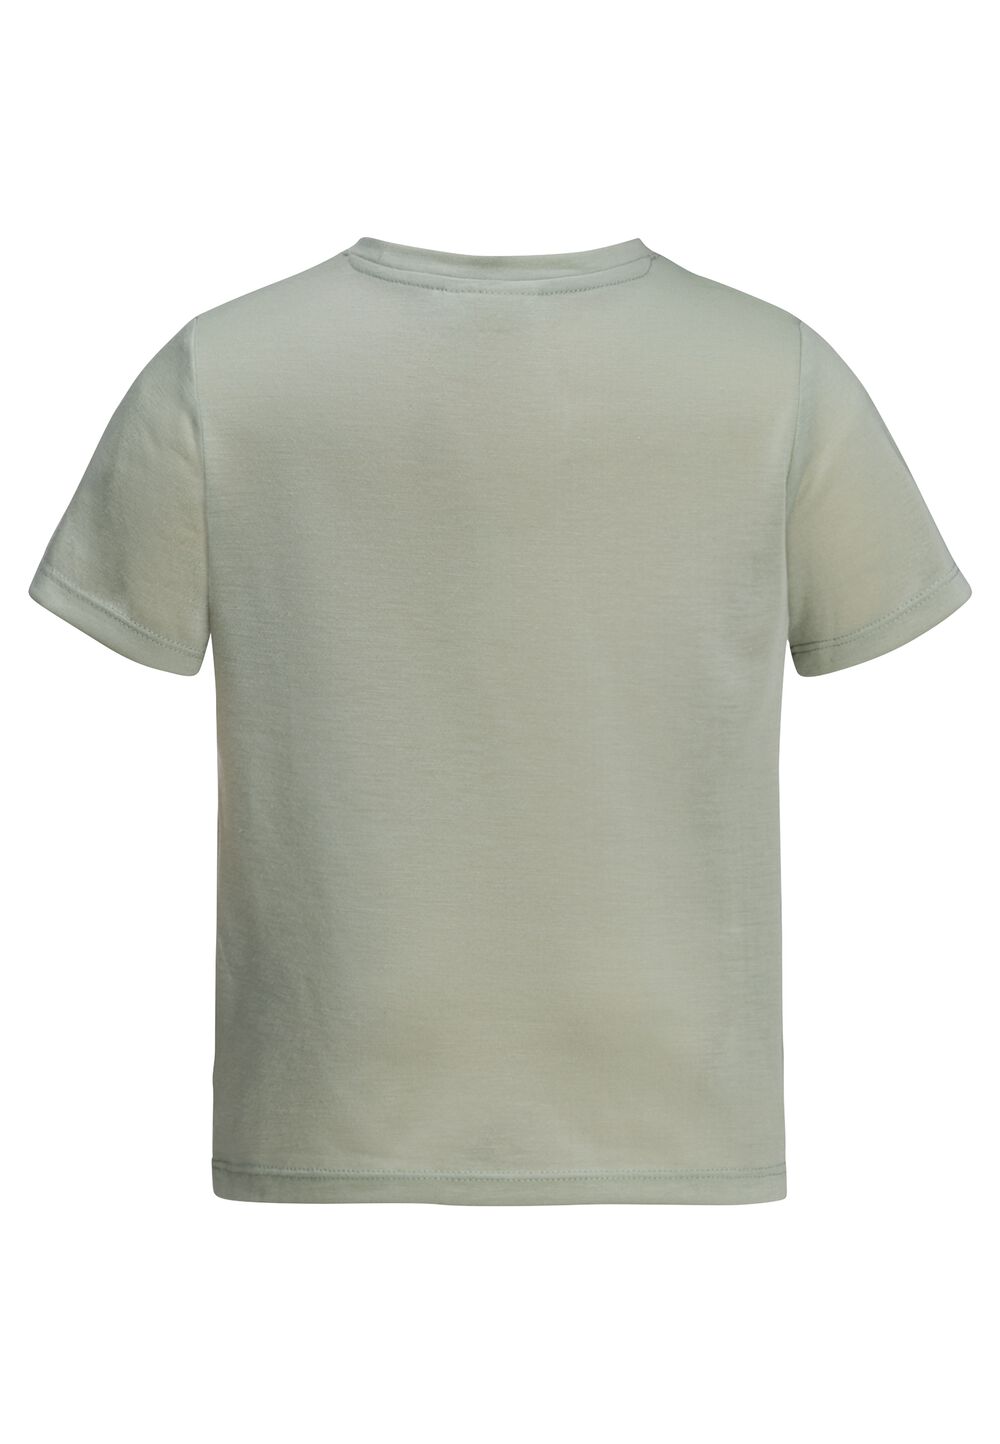 Jack Wolfskin Smileyworld Camp T-Shirt Kids Functioneel shirt Kinderen 116 mint leaf mint leaf